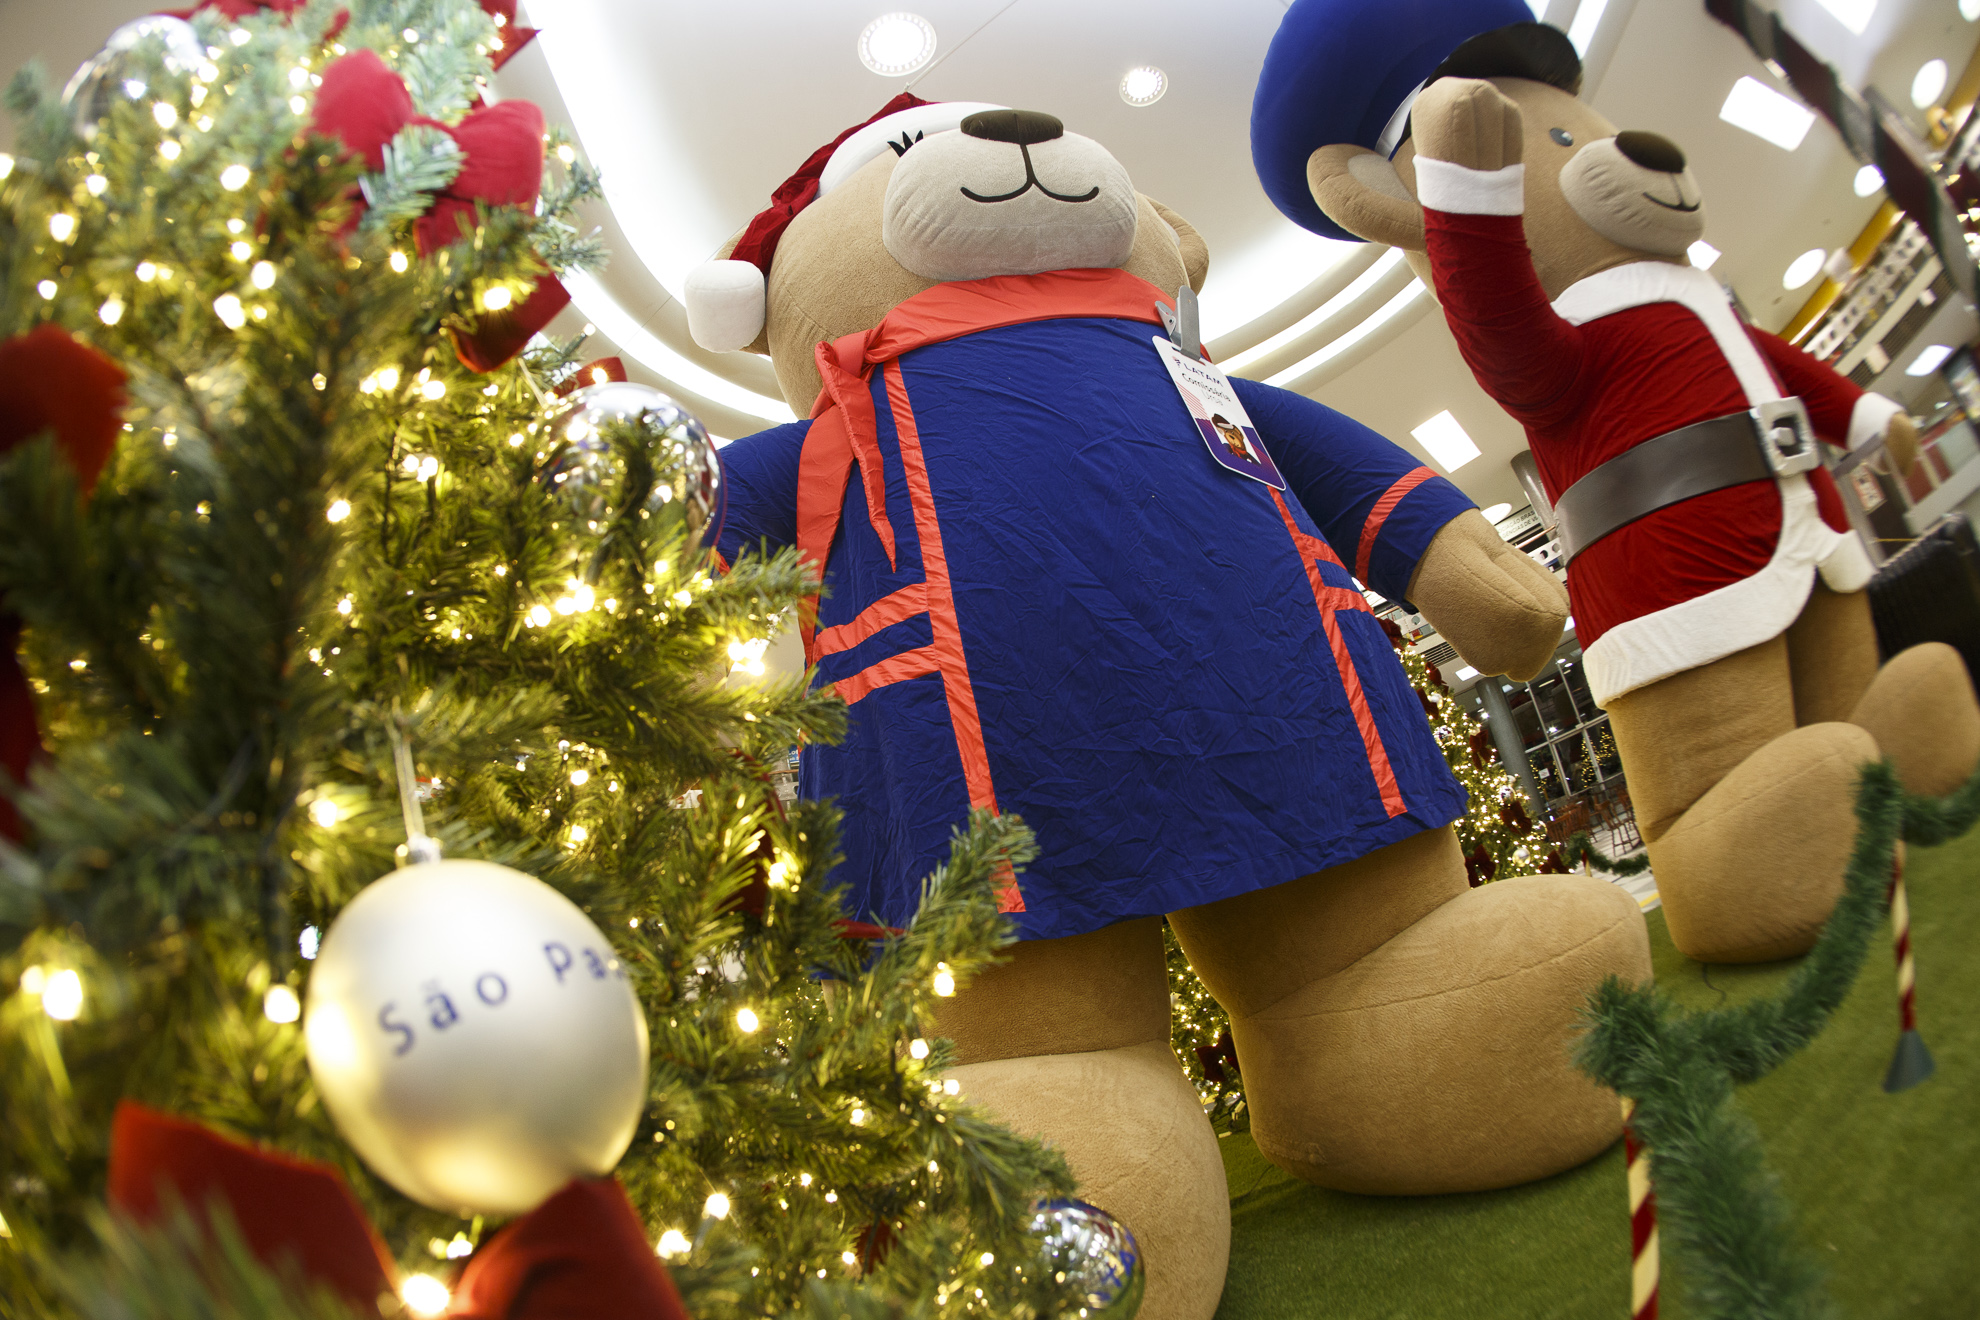 Confira as fotos dos ursos gigantes da decoração de Natal do Aeroporto de Congonhas